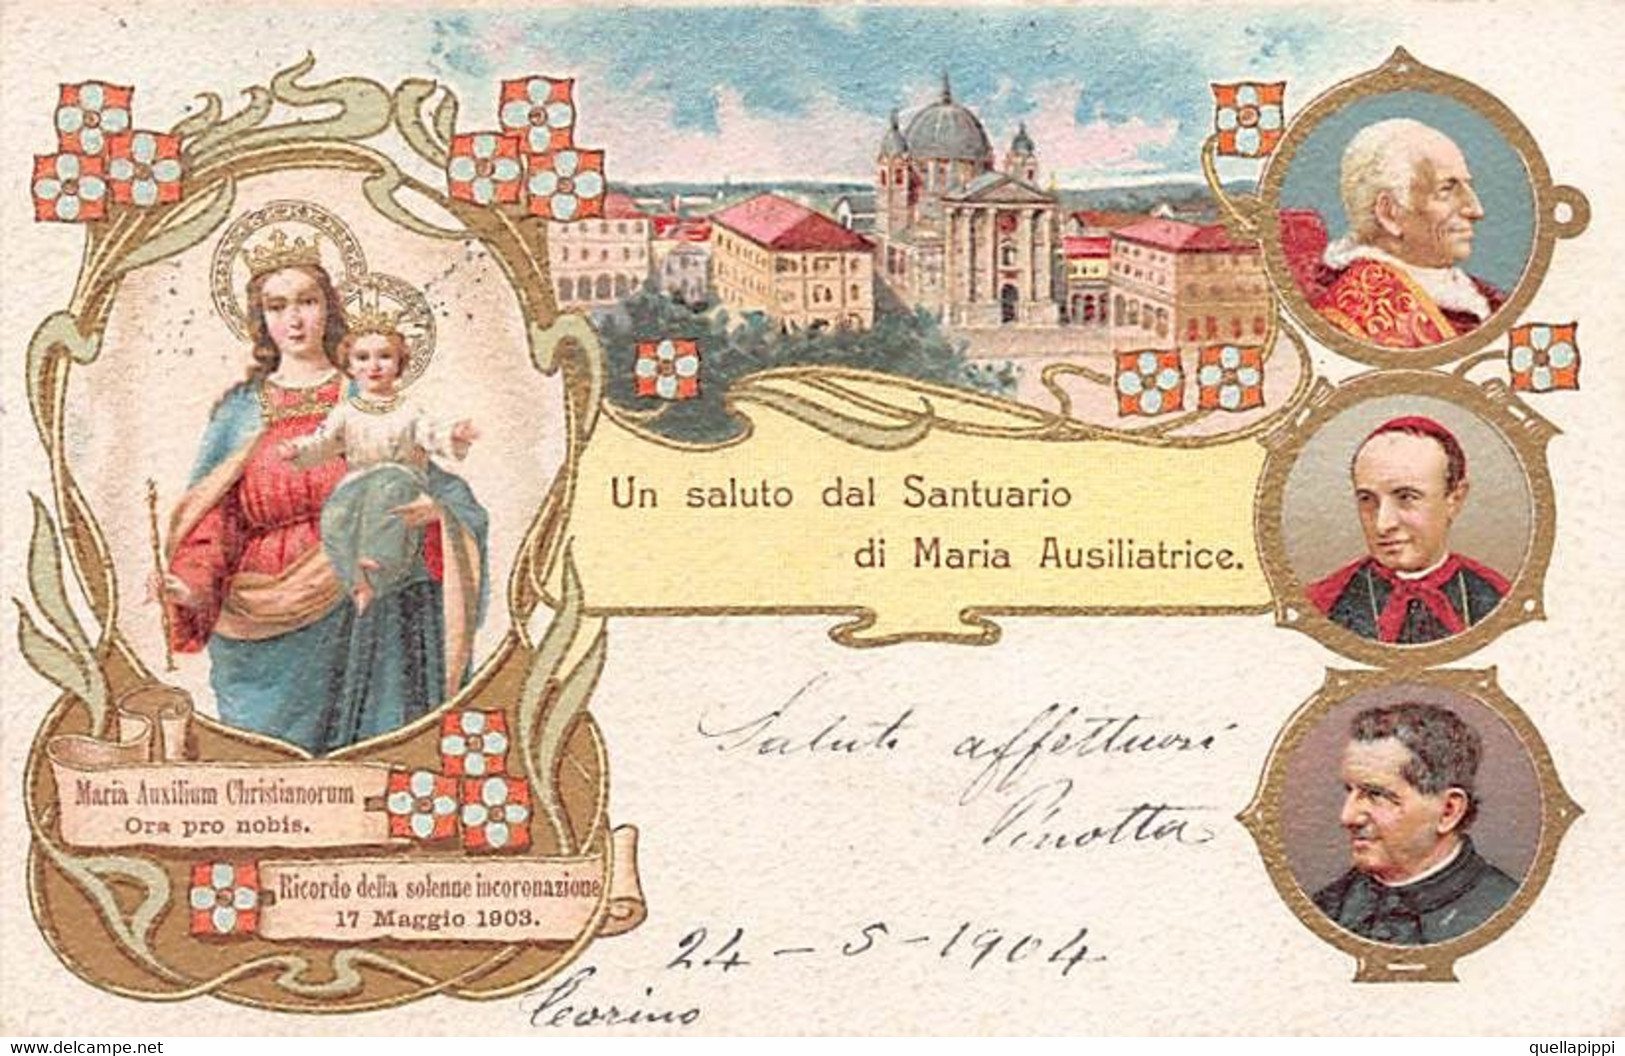 014157 "TORINO - UN SALUTO DAL SANTUARIO DI MARIA AUSILIATRICE" IMMAGINE RELIGIOSA, CART SPED 1904 - Kirchen